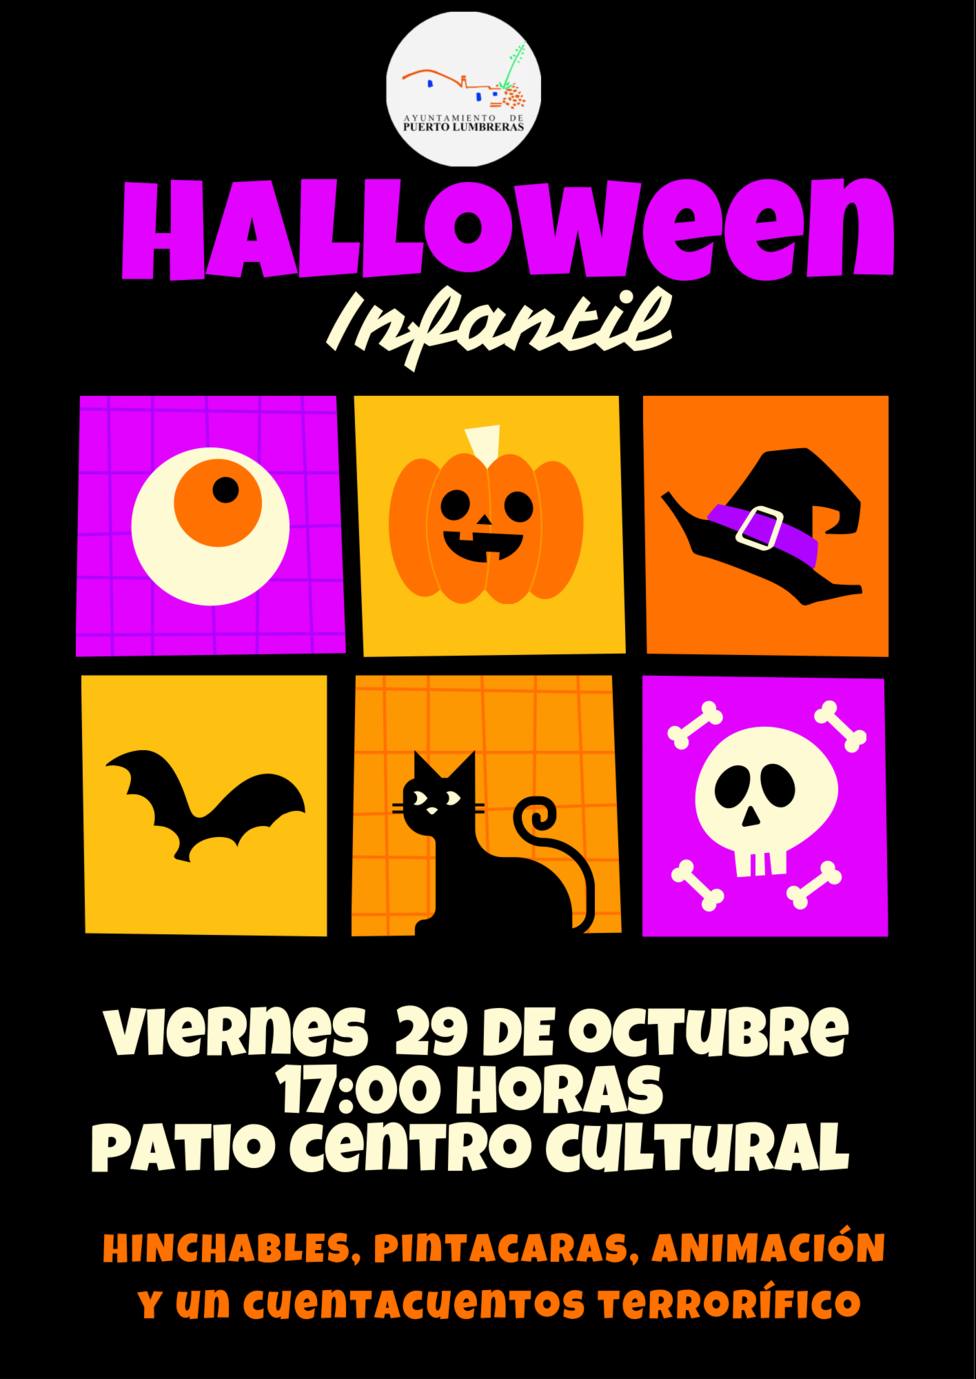 Puerto Lumbreras organiza el próximo viernes actividades para los niños con motivo de Halloween